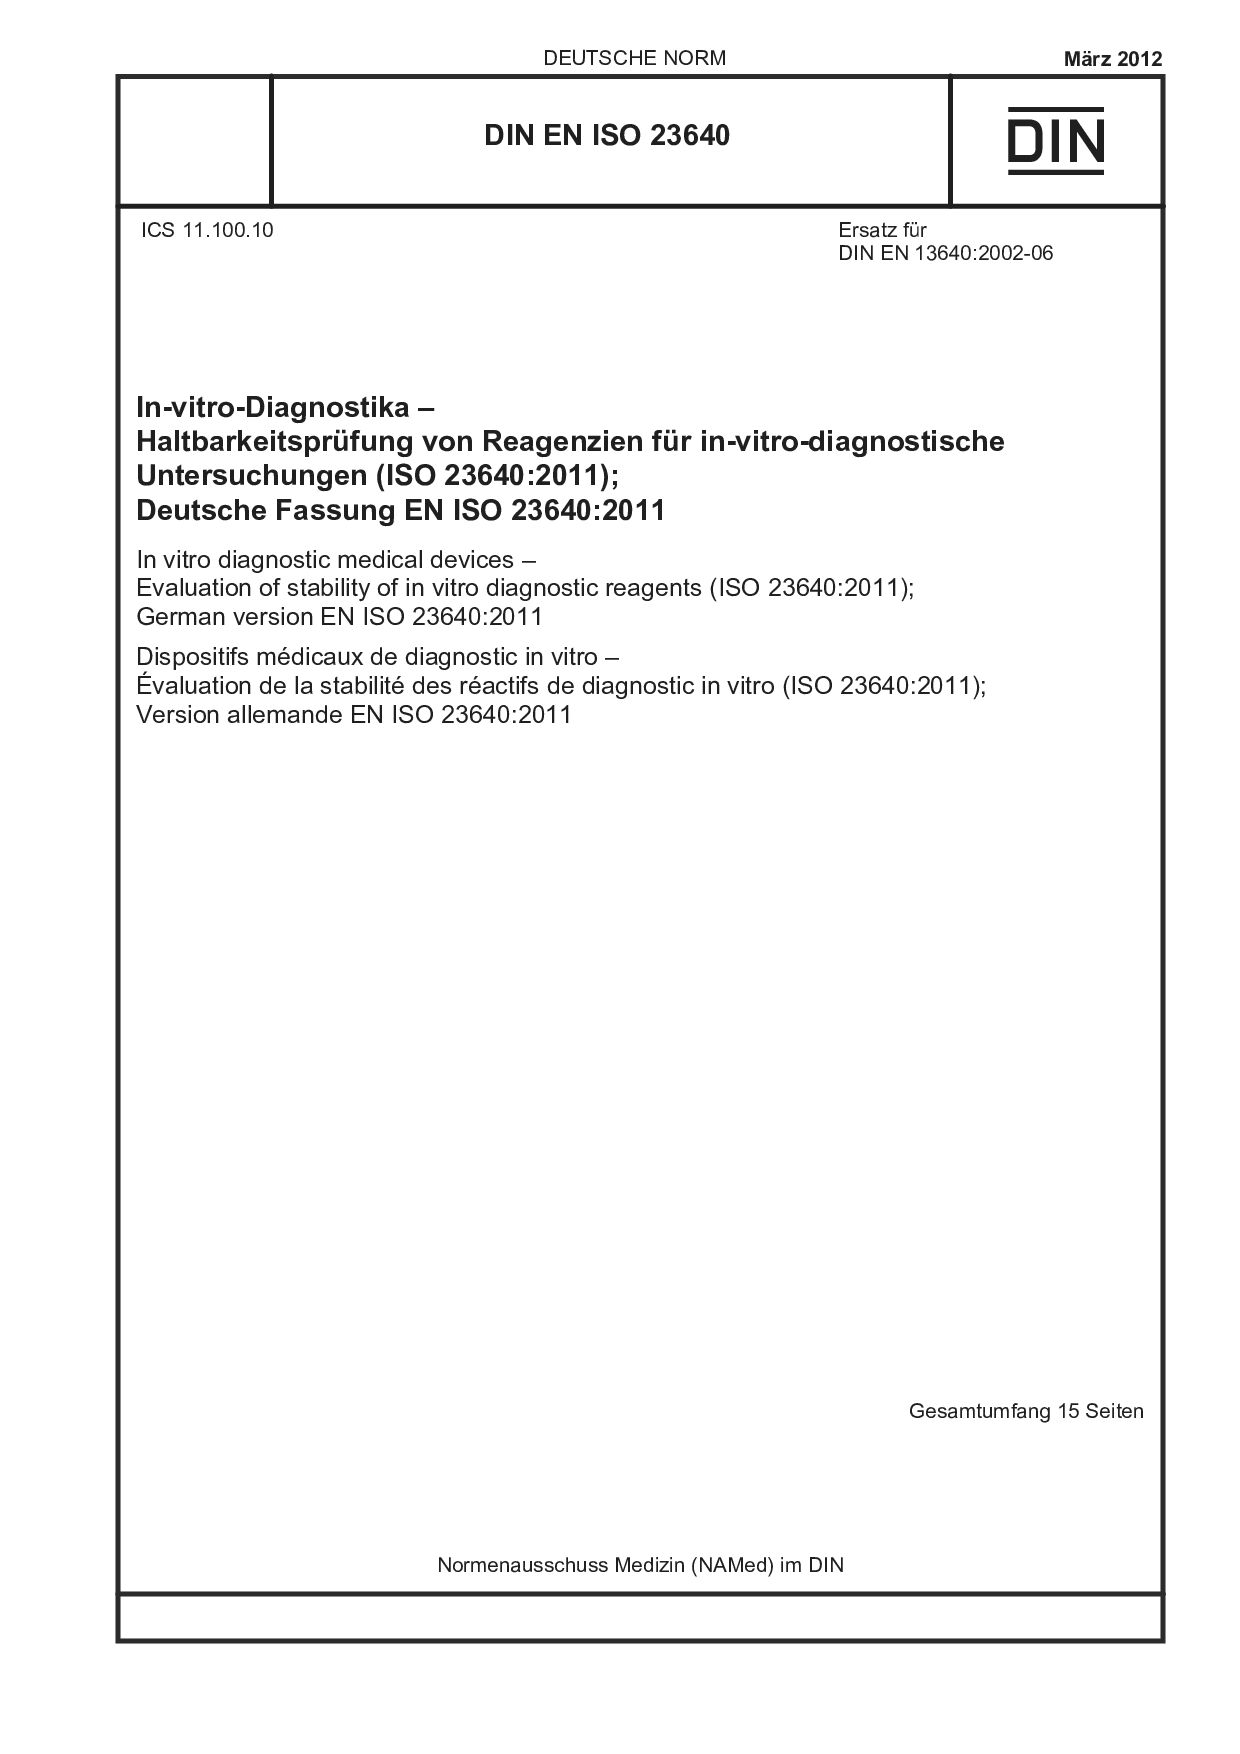 DIN EN ISO 23640:2012封面图